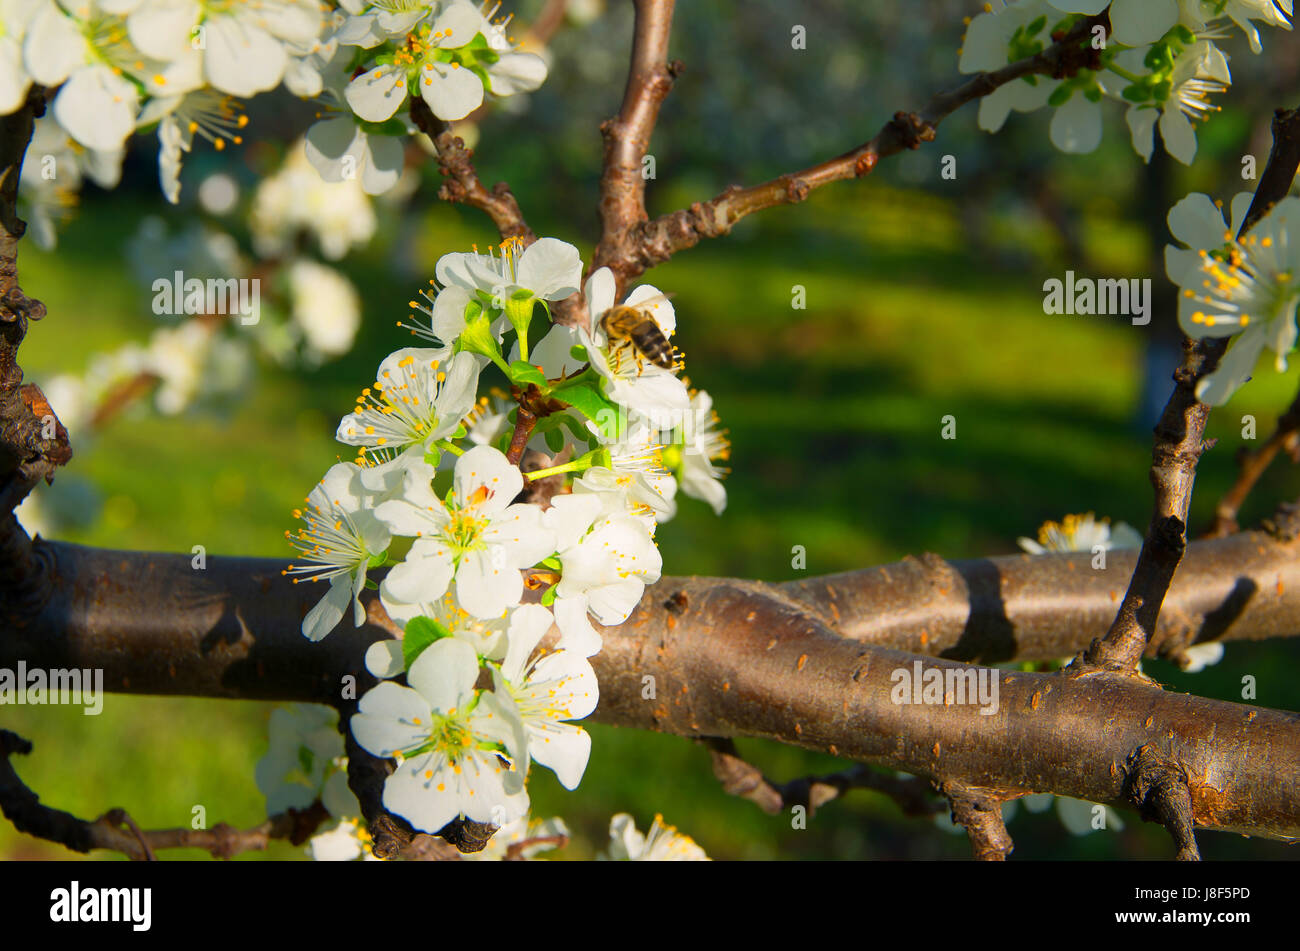 Impollinazione degli alberi in fiore. Foto Stock